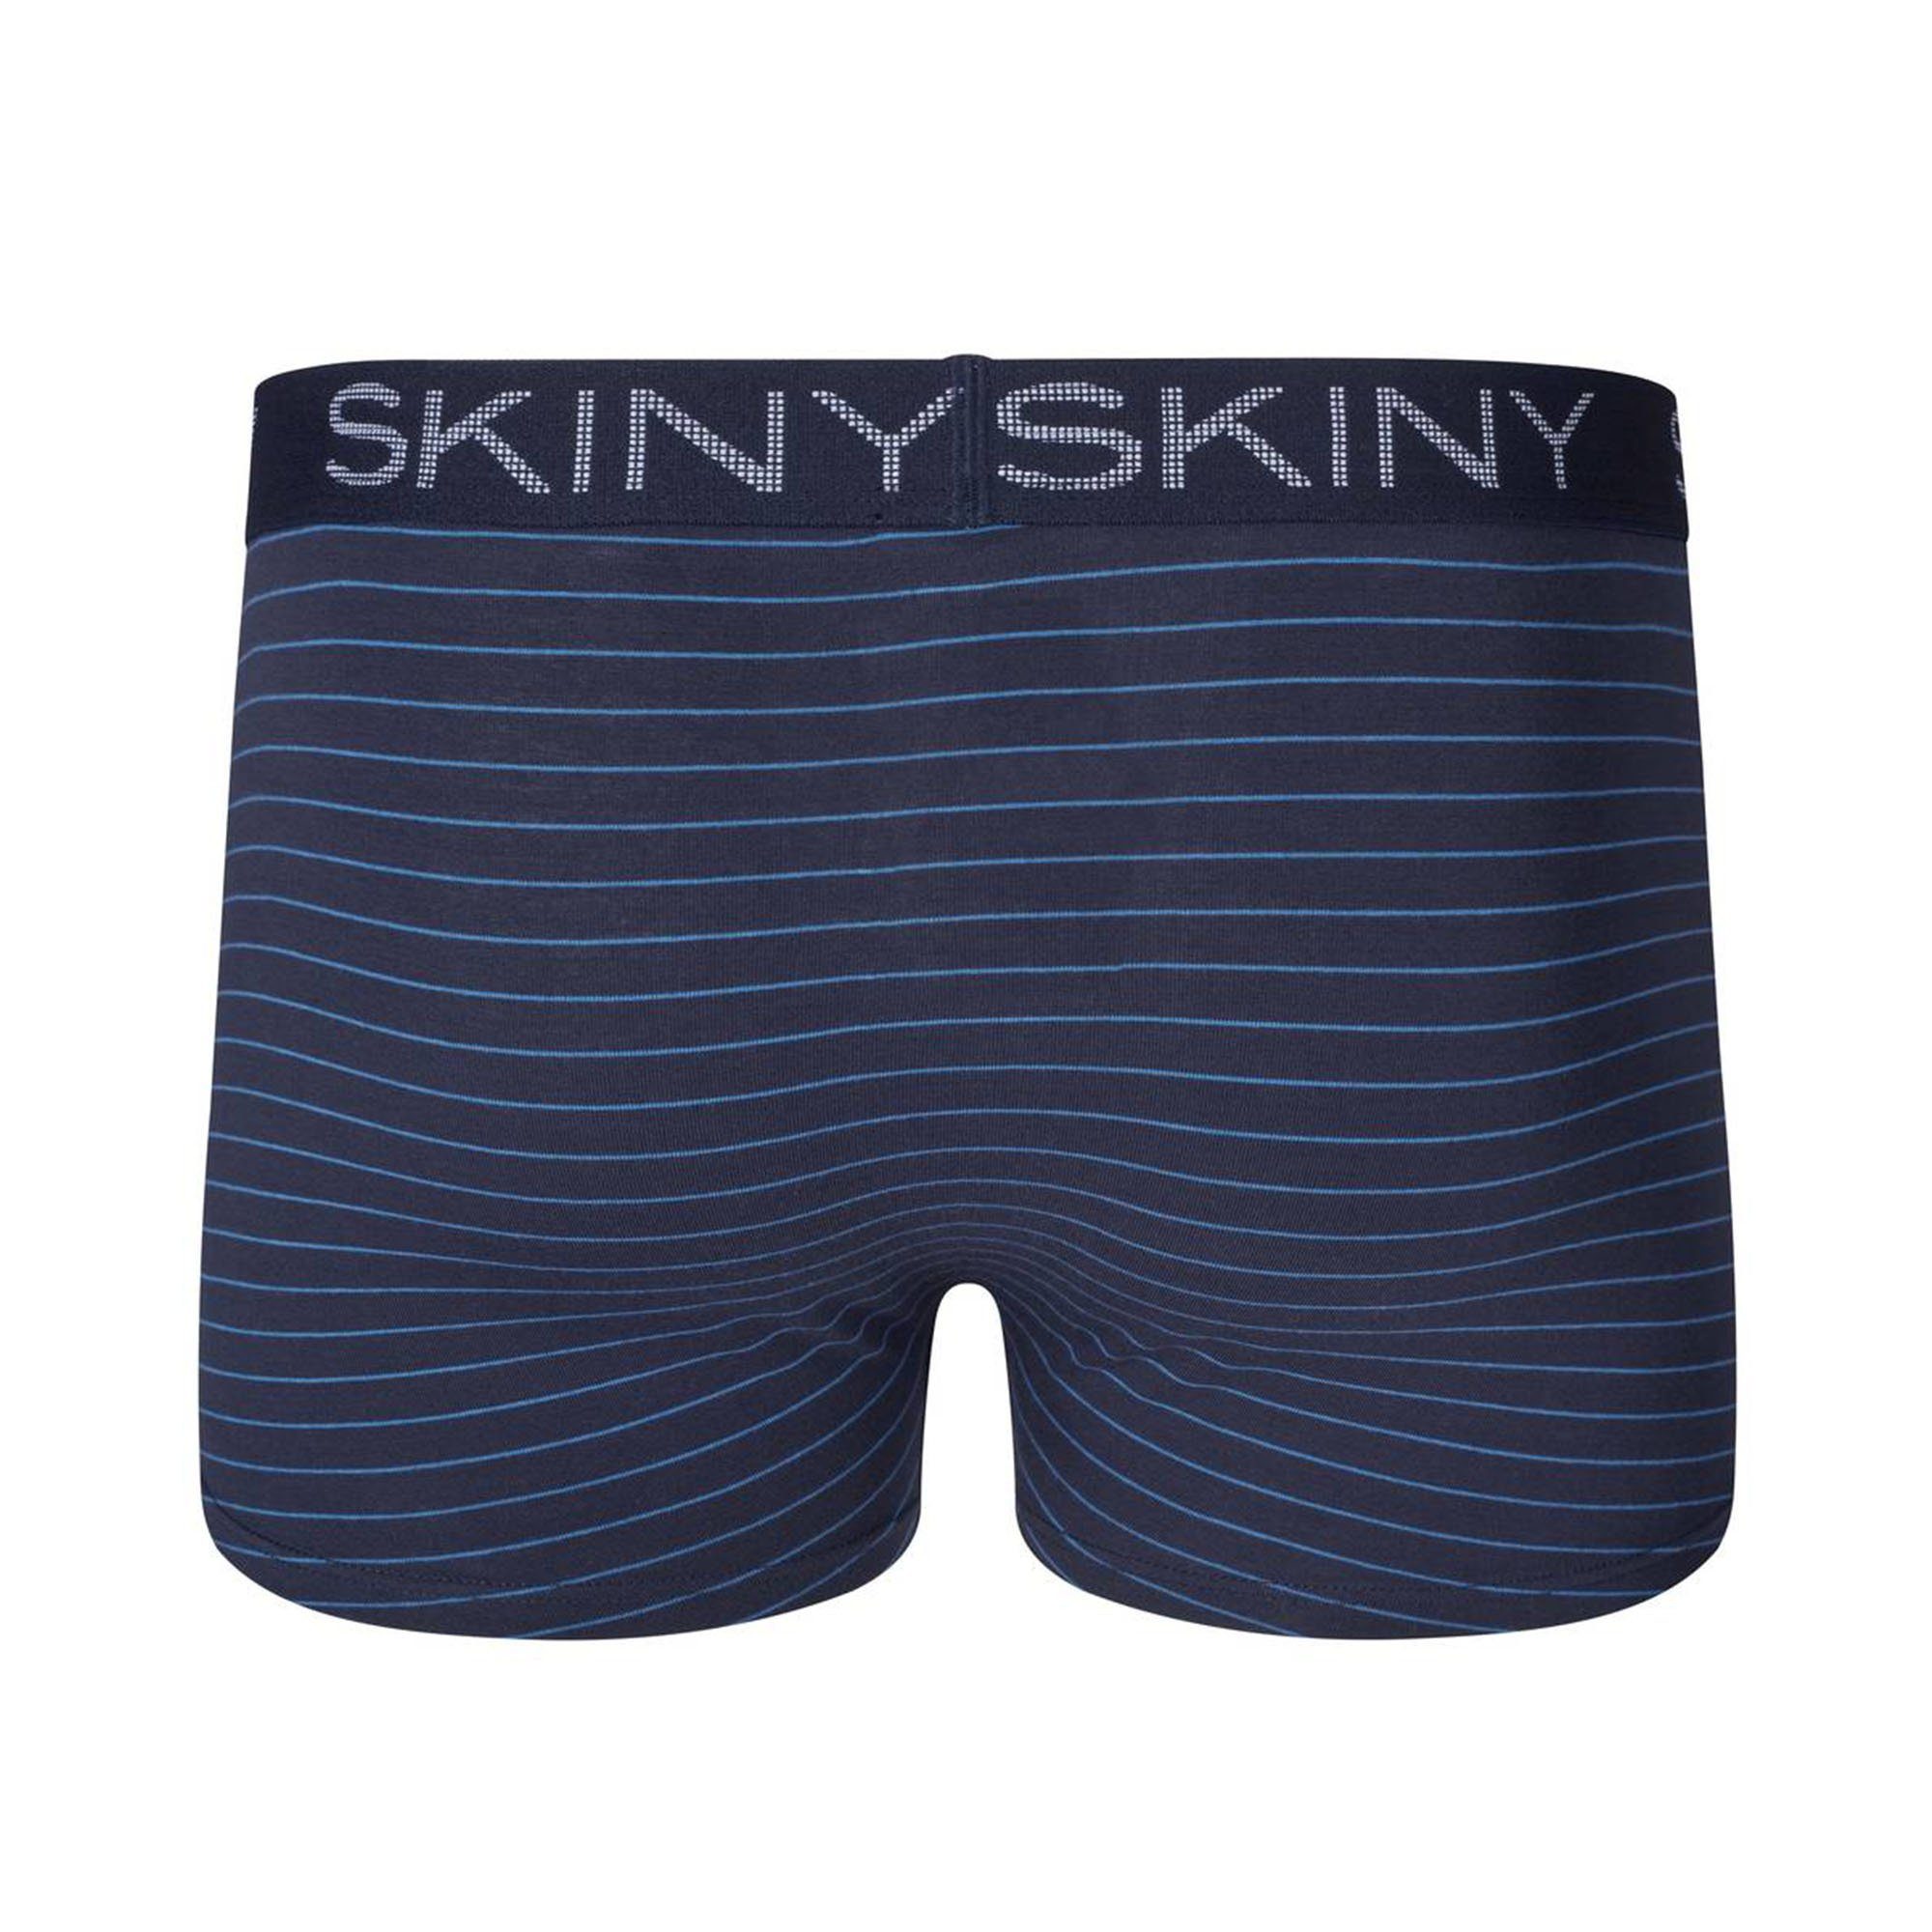 Blau Skiny - Pants Trunks, 2er Boxer Herren Boxer Pack Short,